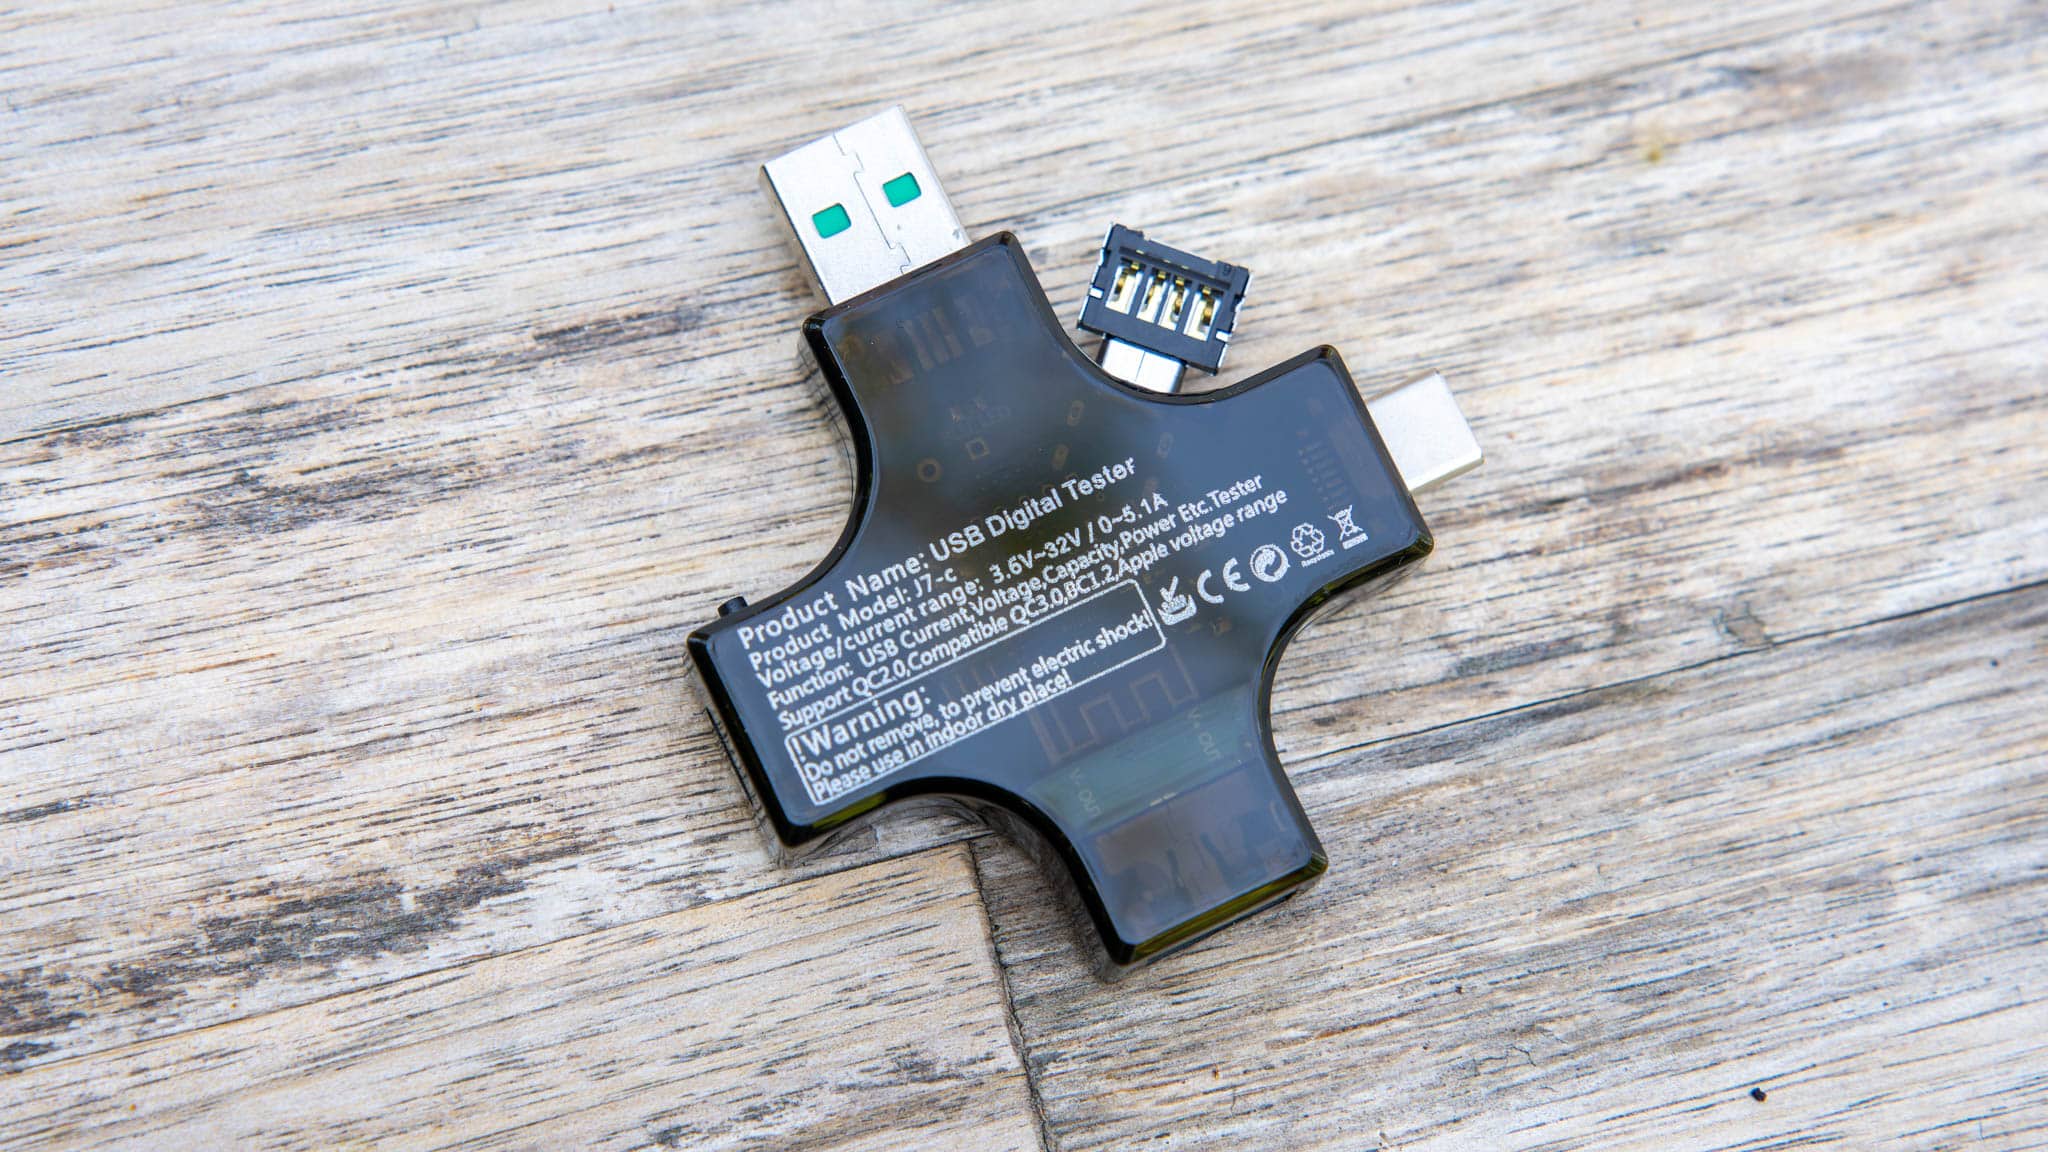 Test of USB Digital Tester J7-c